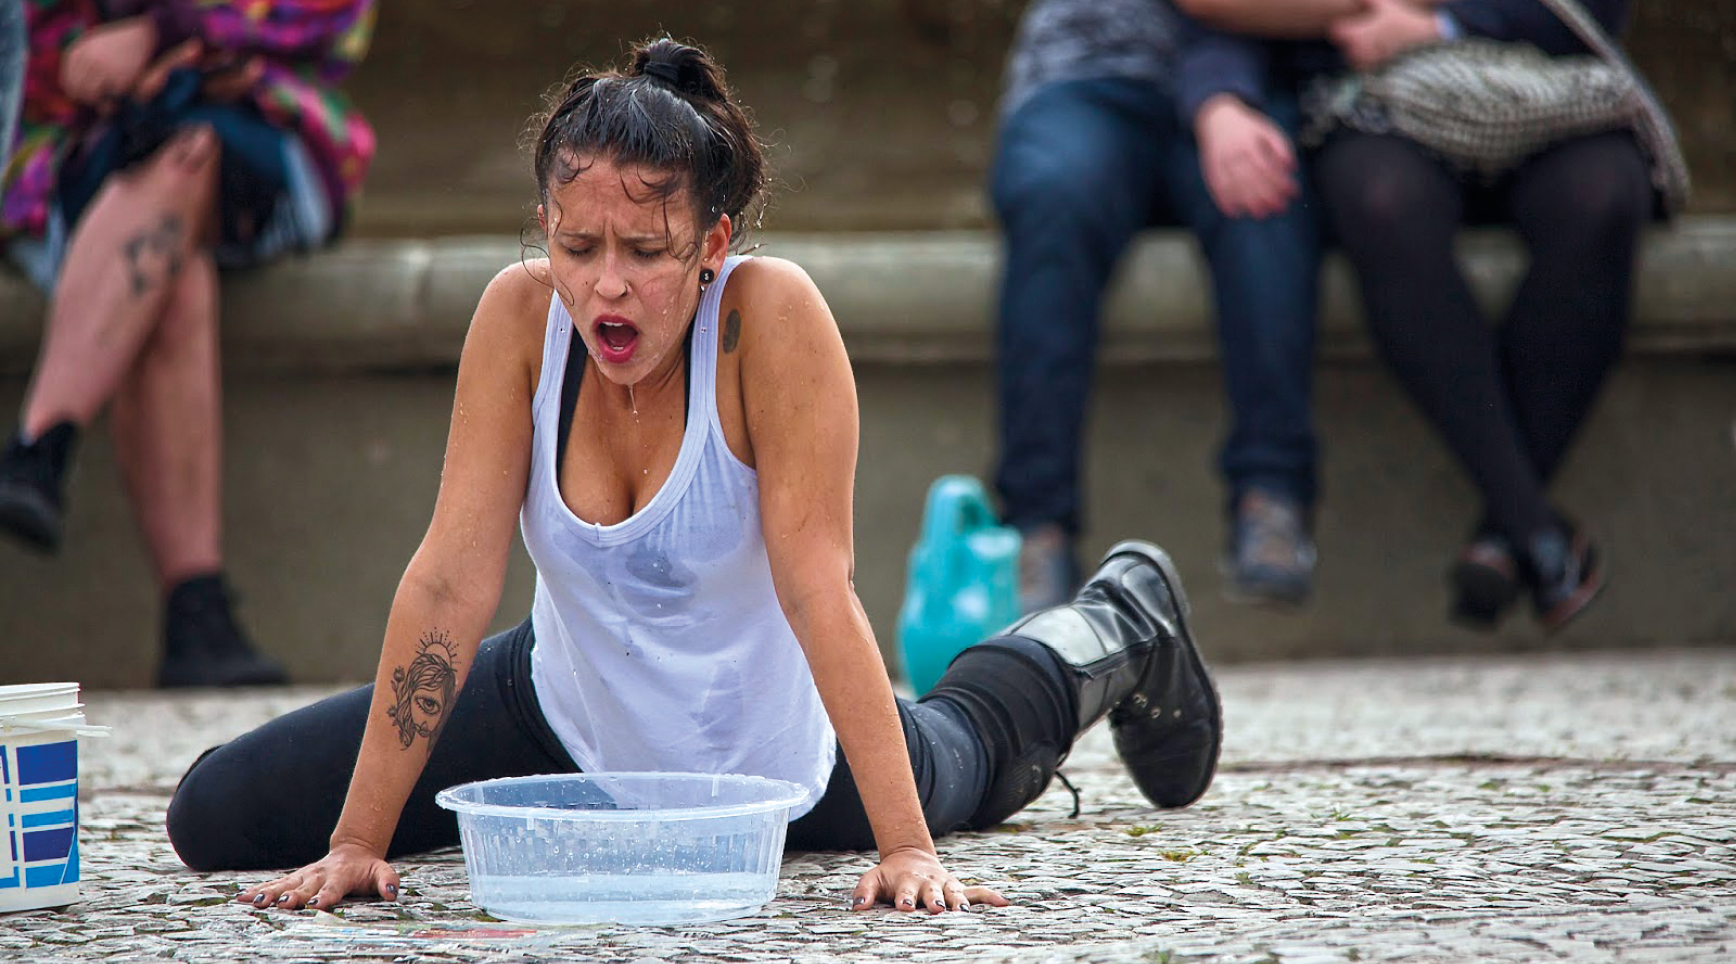 Fotografia. Artista faz performance na rua. Ela está de camiseta branca e calça preta e está em frente a uma bacia com água, apoiada com as mãos no chão. Seu rosto e camiseta estão molhados.